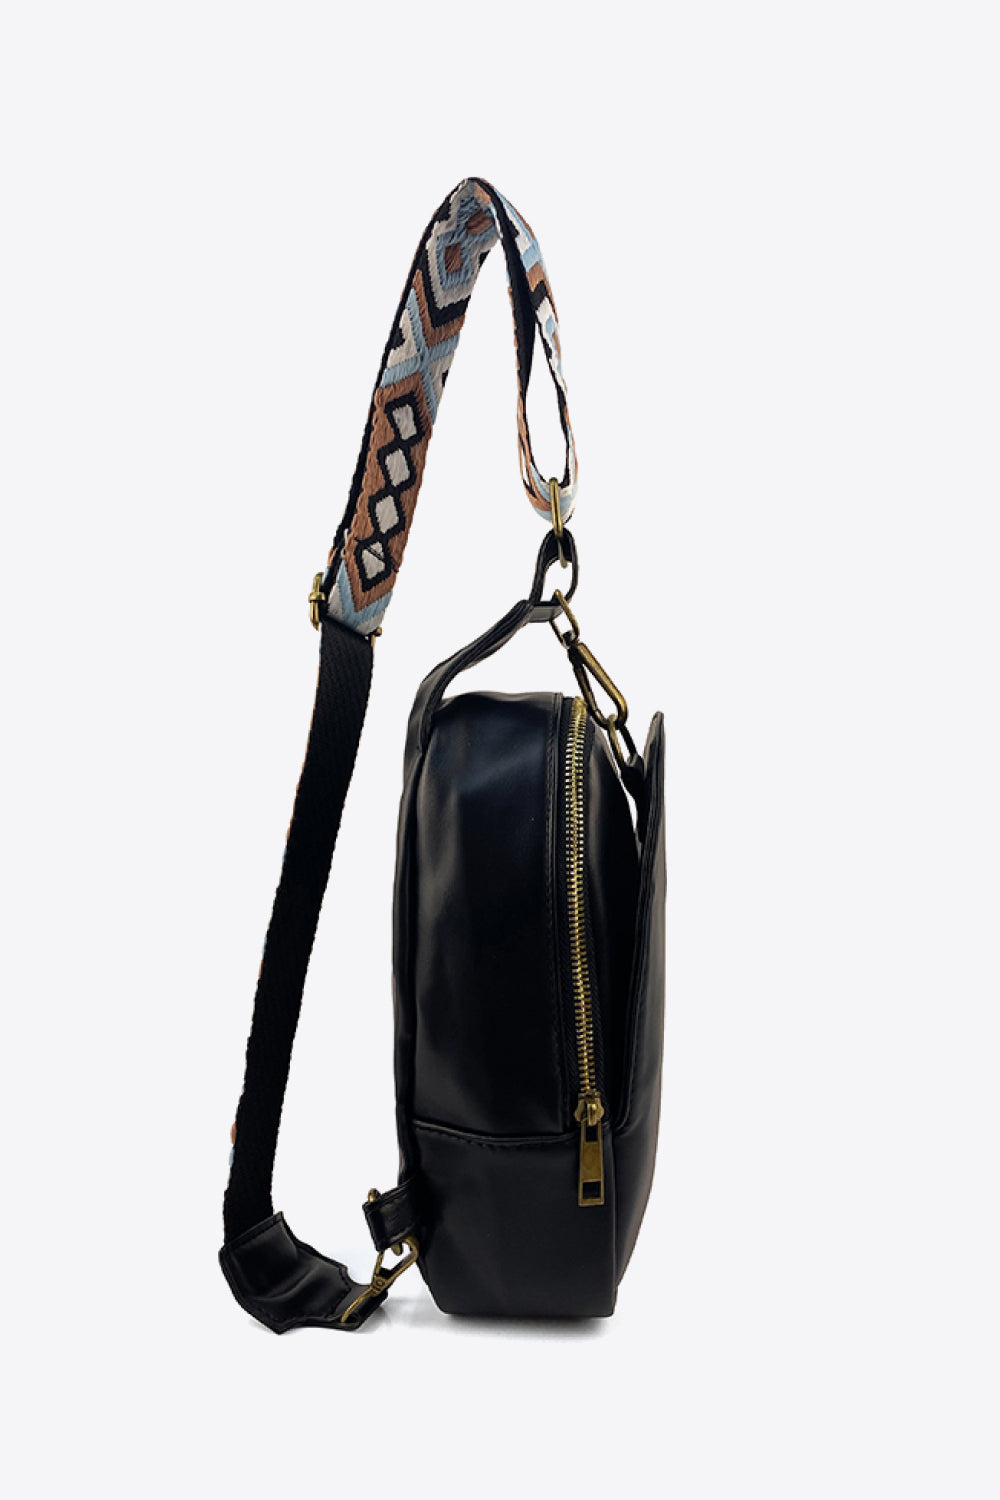 Soleil Adjustable Patterened Strap PU Leather Sling Bag